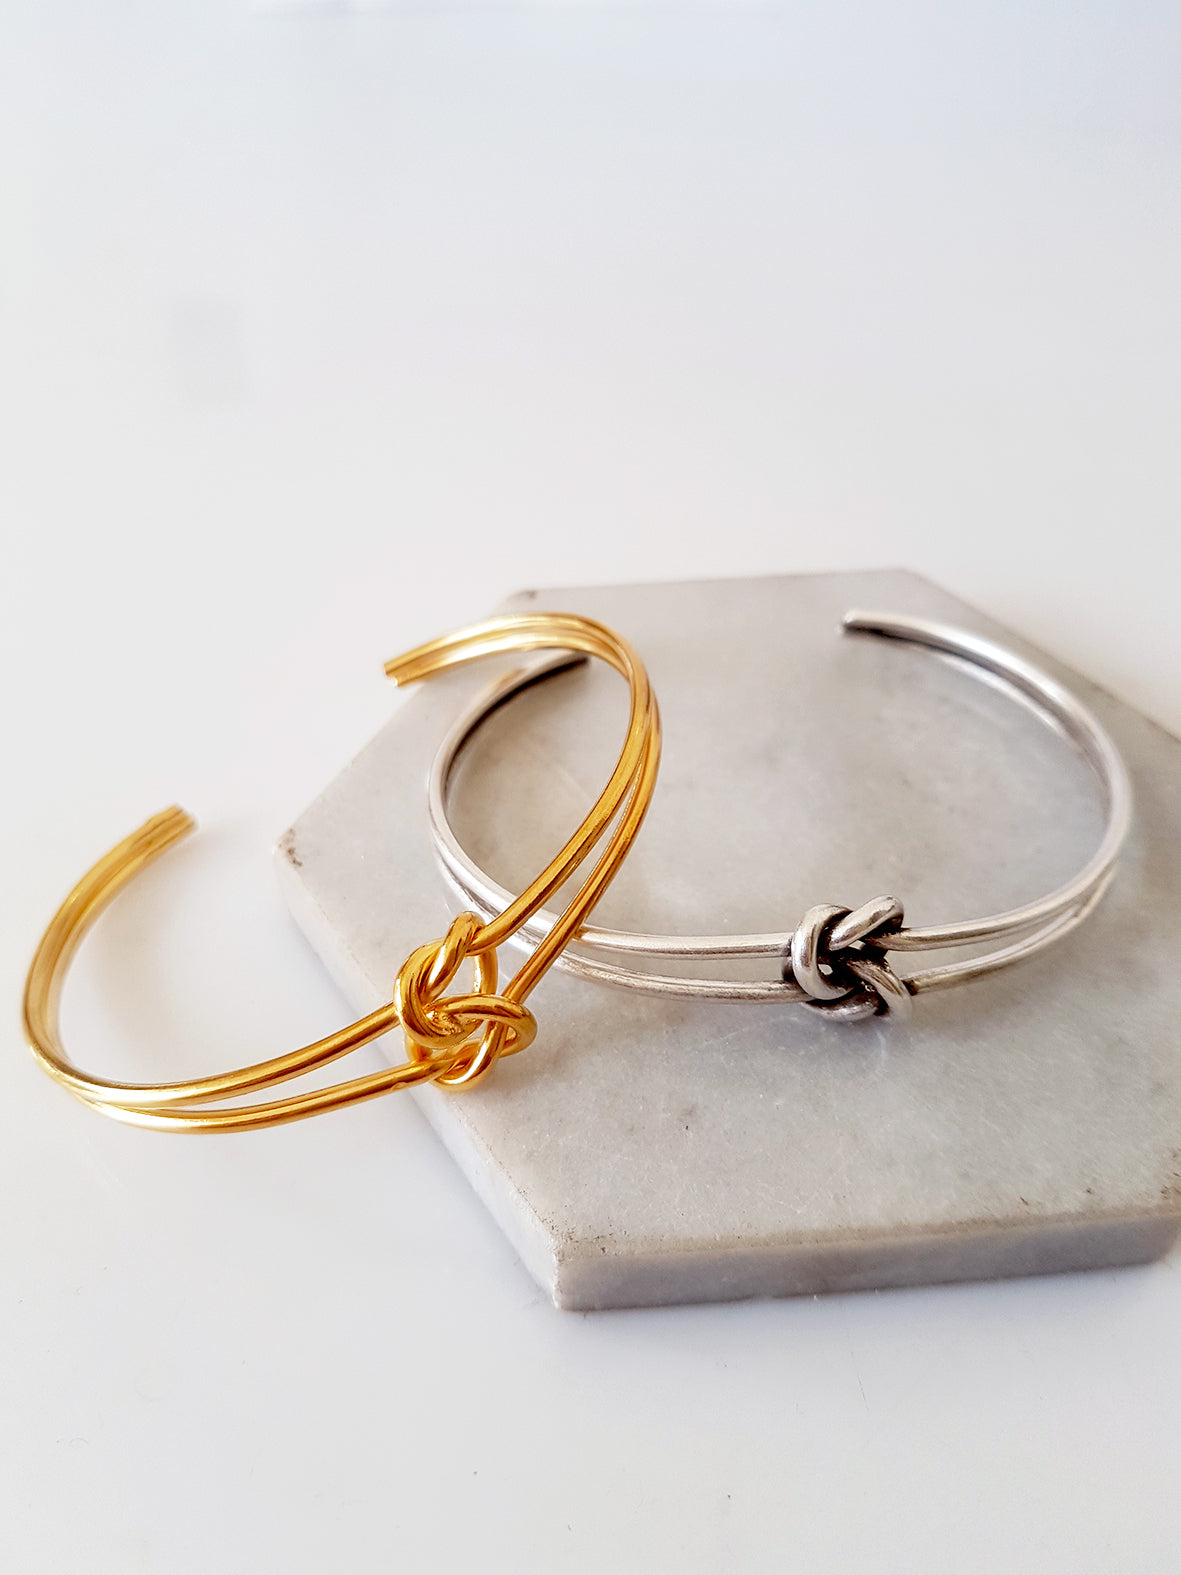 Double knot metal bracelet, package of 2 bracelets - SoCuteb2b